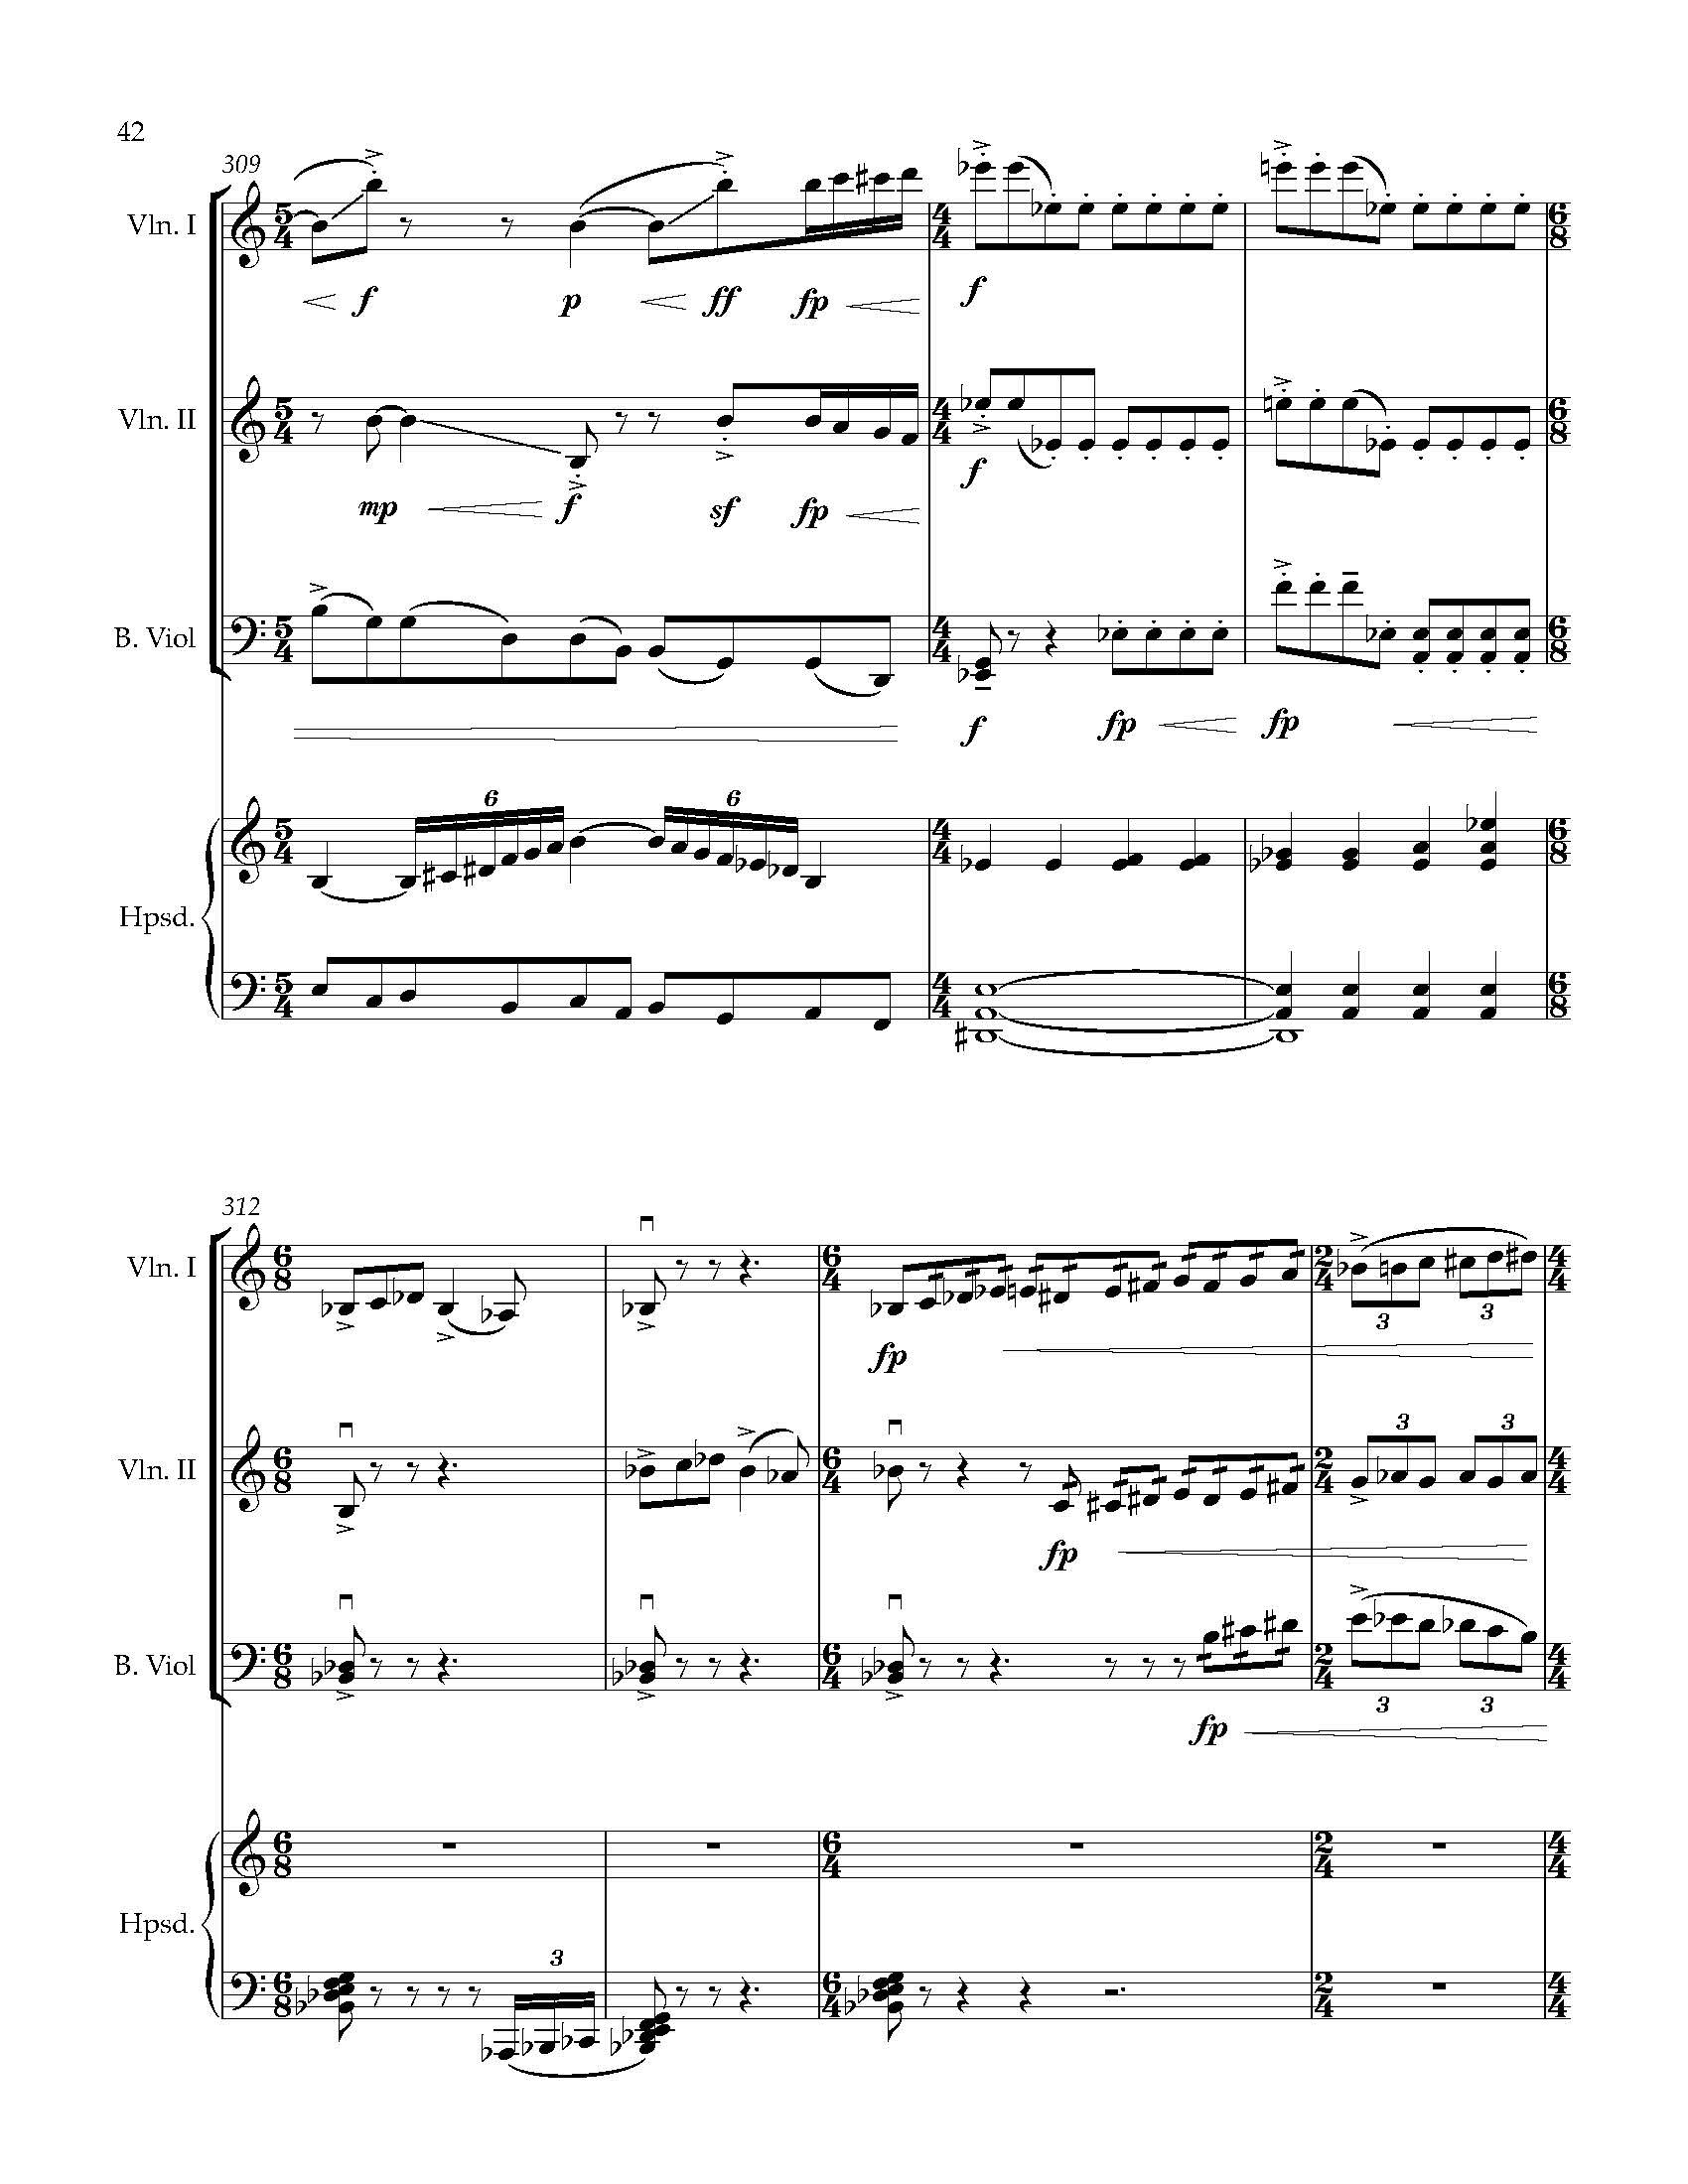 Sonata Sonare - Complete Score_Page_48.jpg